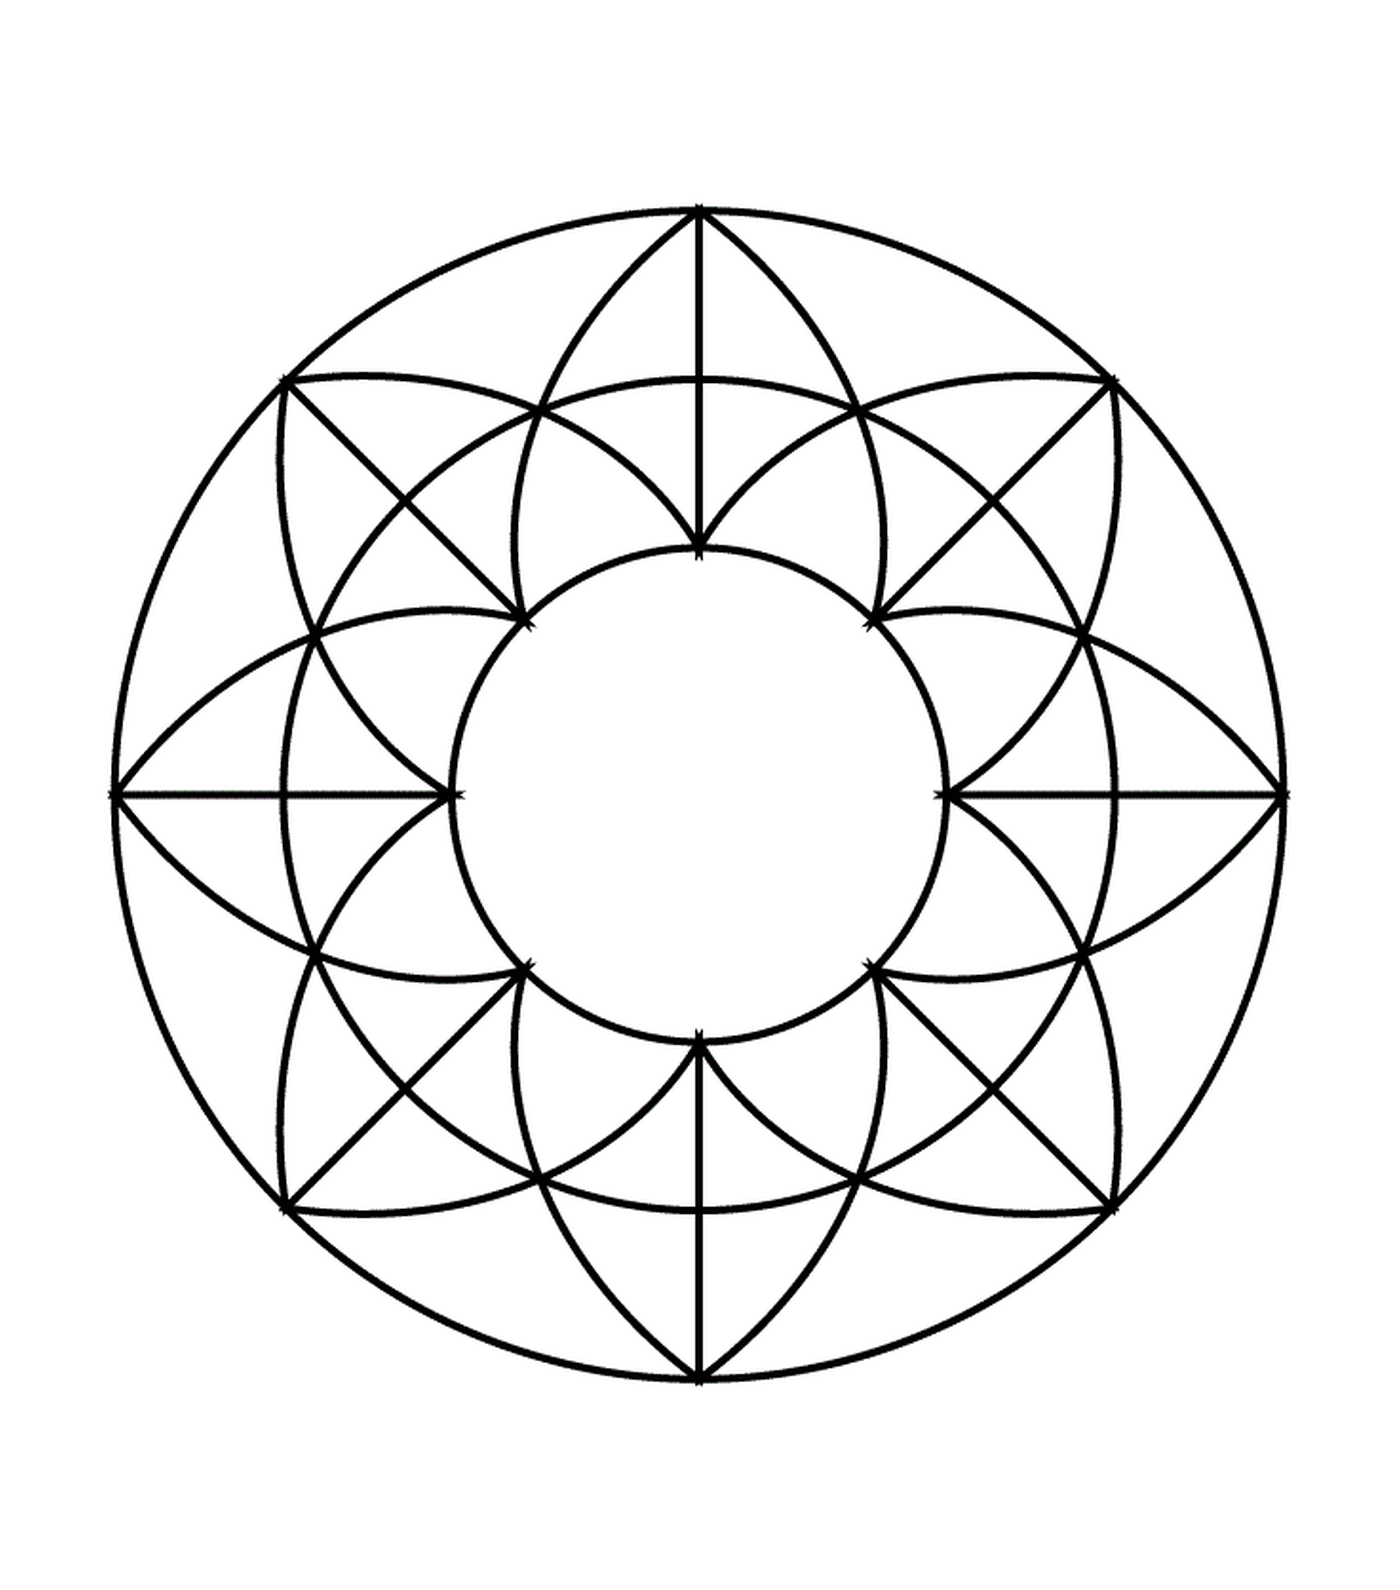  Круг с геометрическим рисунком внутри 